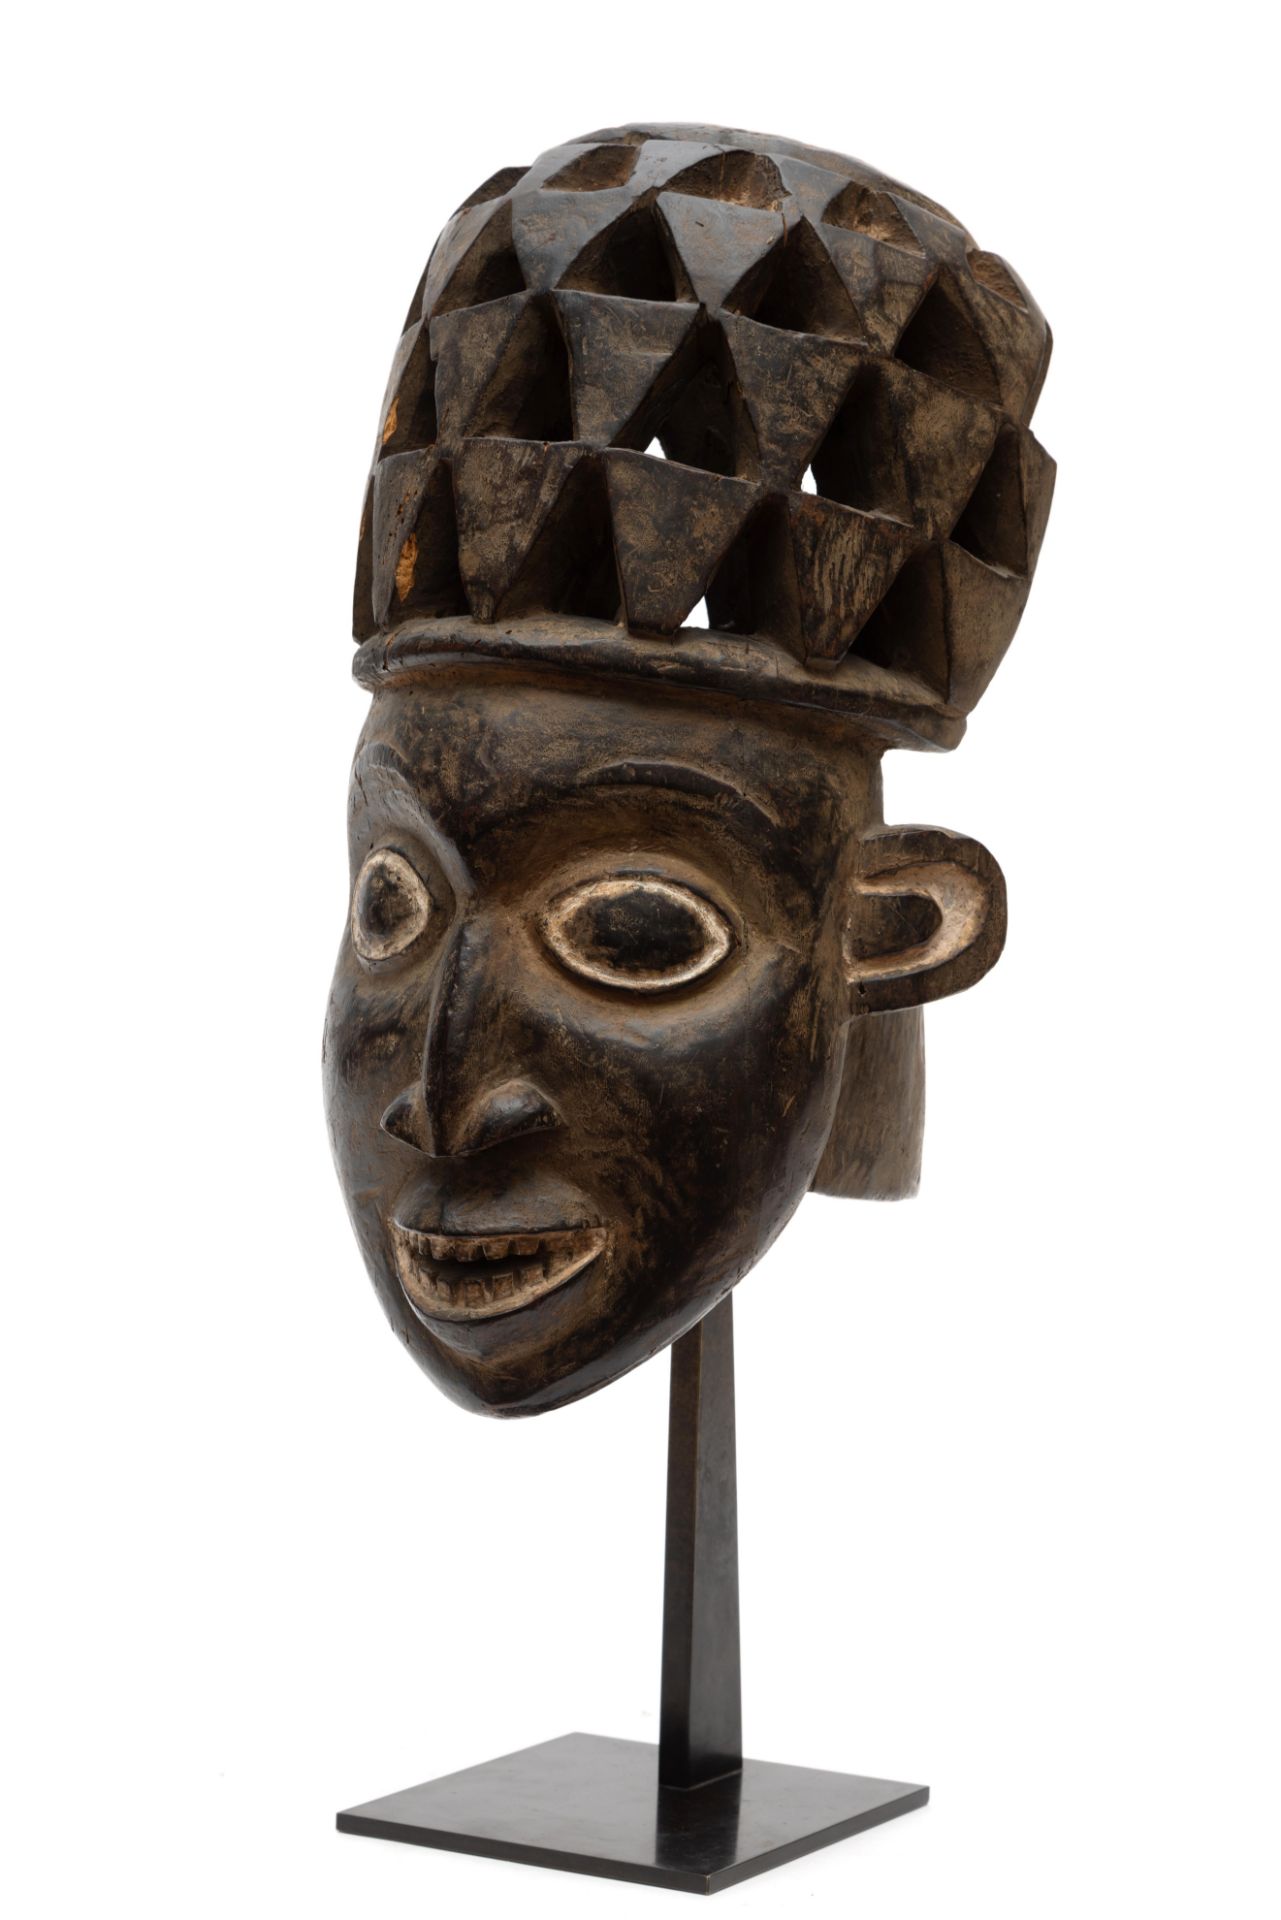 Cameroon, Grasslands, Bamileke, helmet mask, - Image 8 of 8